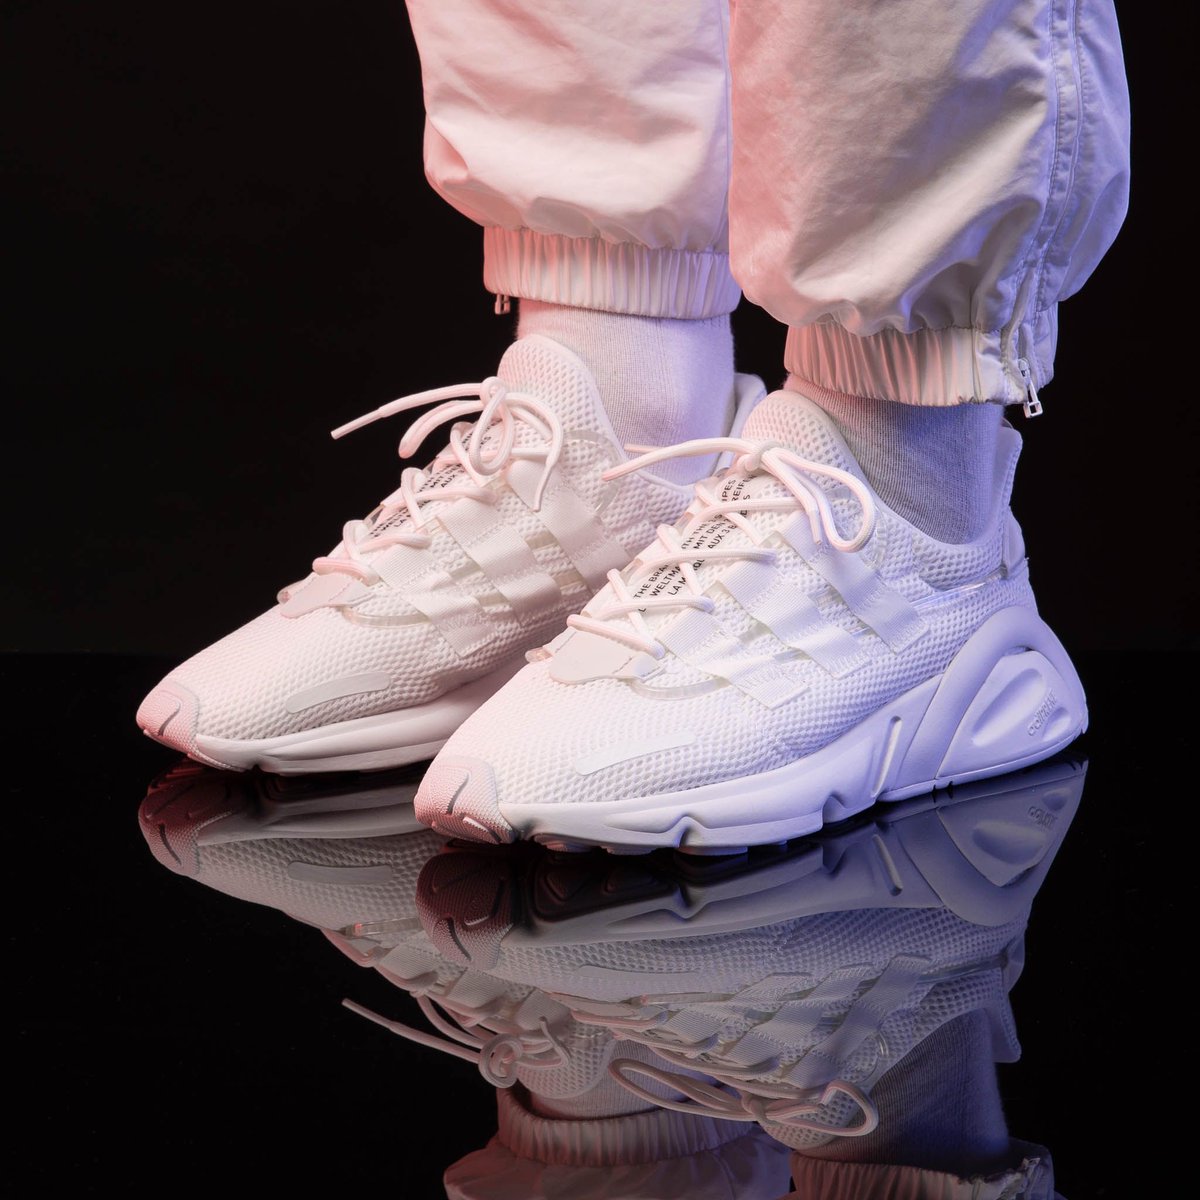 adidas lxcon white on feet